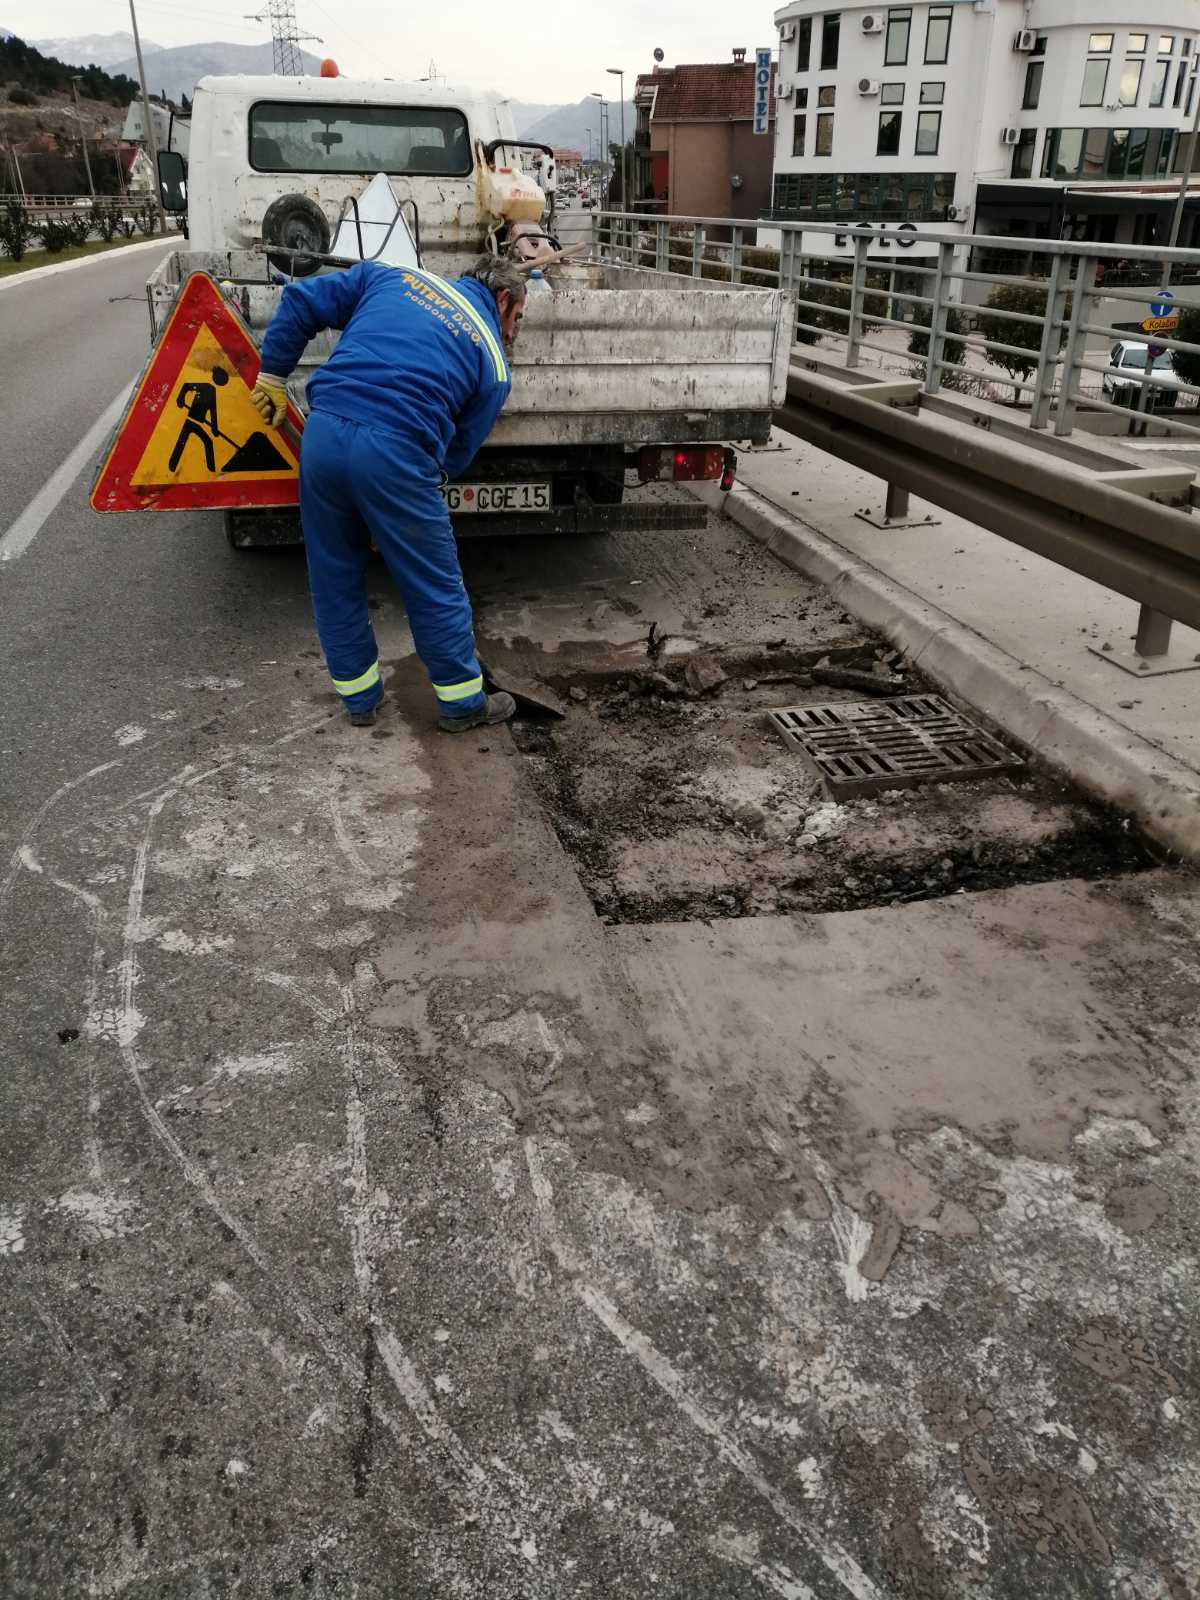 Putevi d.o.o. continue to repair potholes